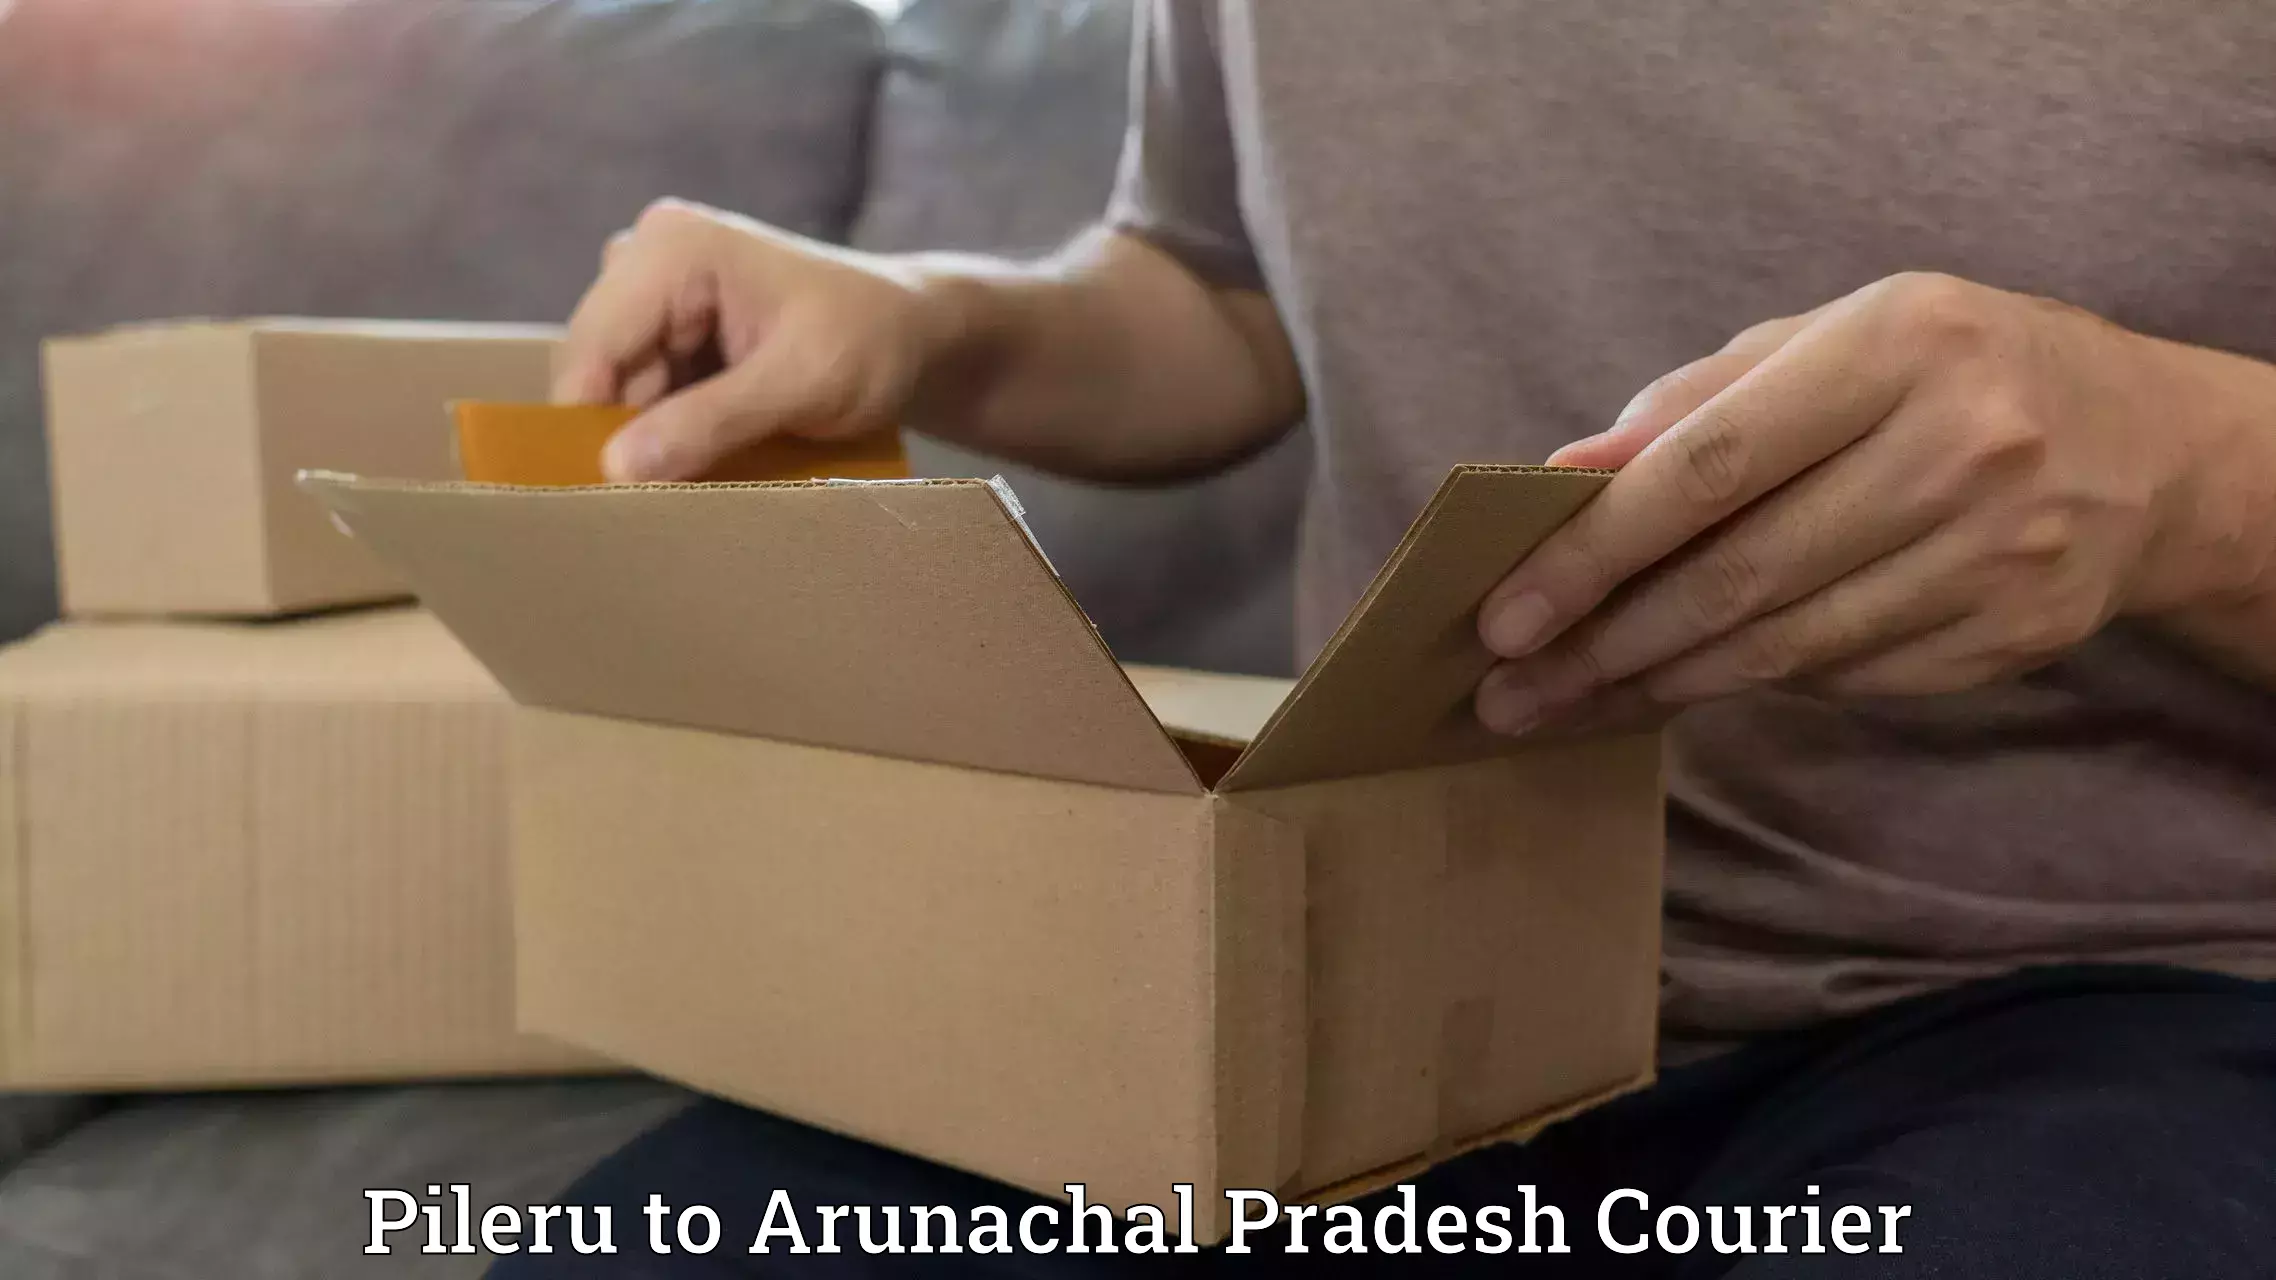 Premium courier solutions in Pileru to Arunachal Pradesh